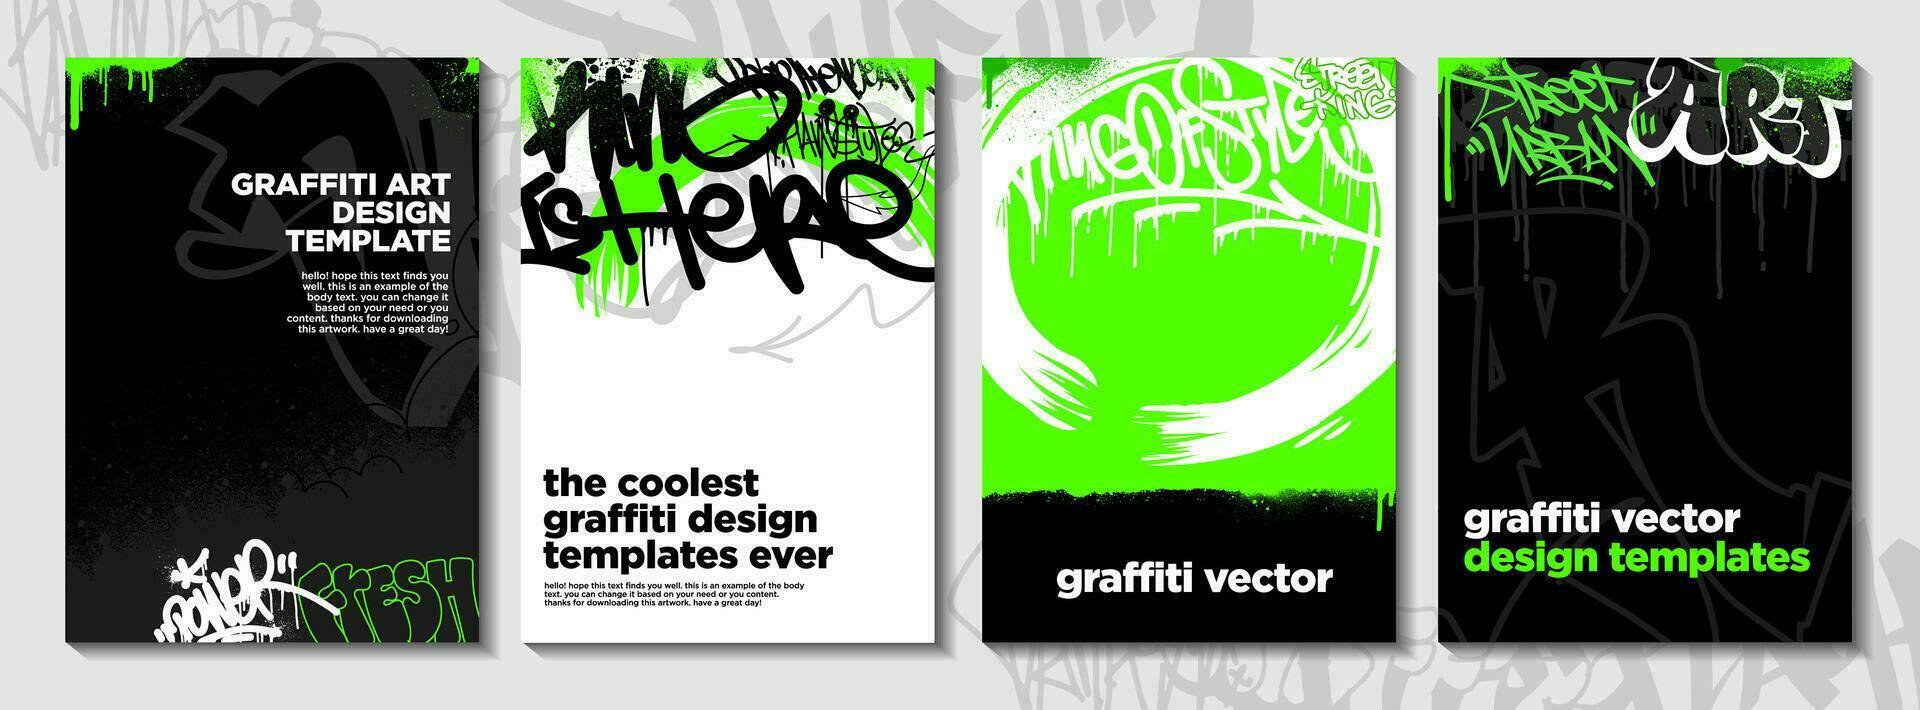 graffiti affisch eller flygblad design mallar med färgrik taggar, grunge, klottrare och kasta upp. ritad för hand abstrakt graffiti vektor mönster.